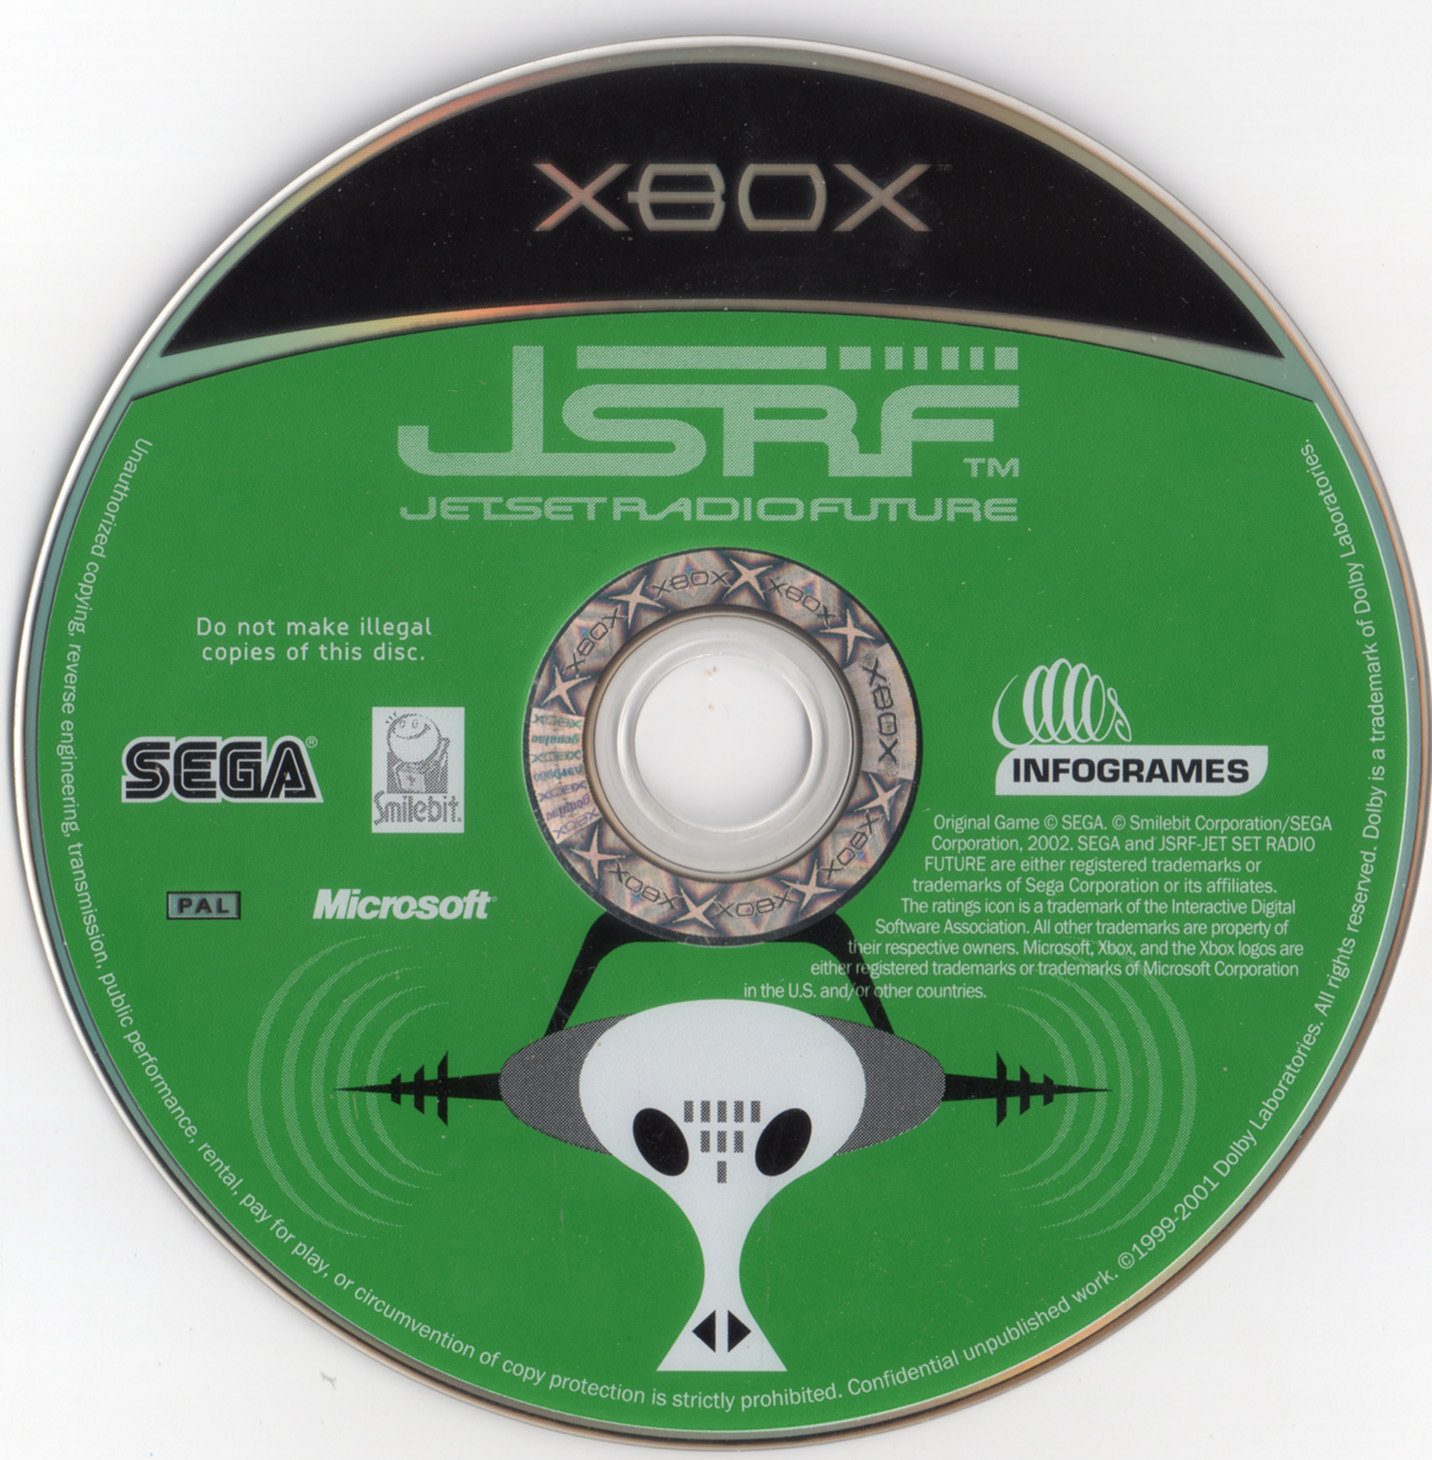 Радио сеты. Jet Set Radio Future Xbox. Джет сет радио диск. JSRF Xbox. Jet Set Radio Future.